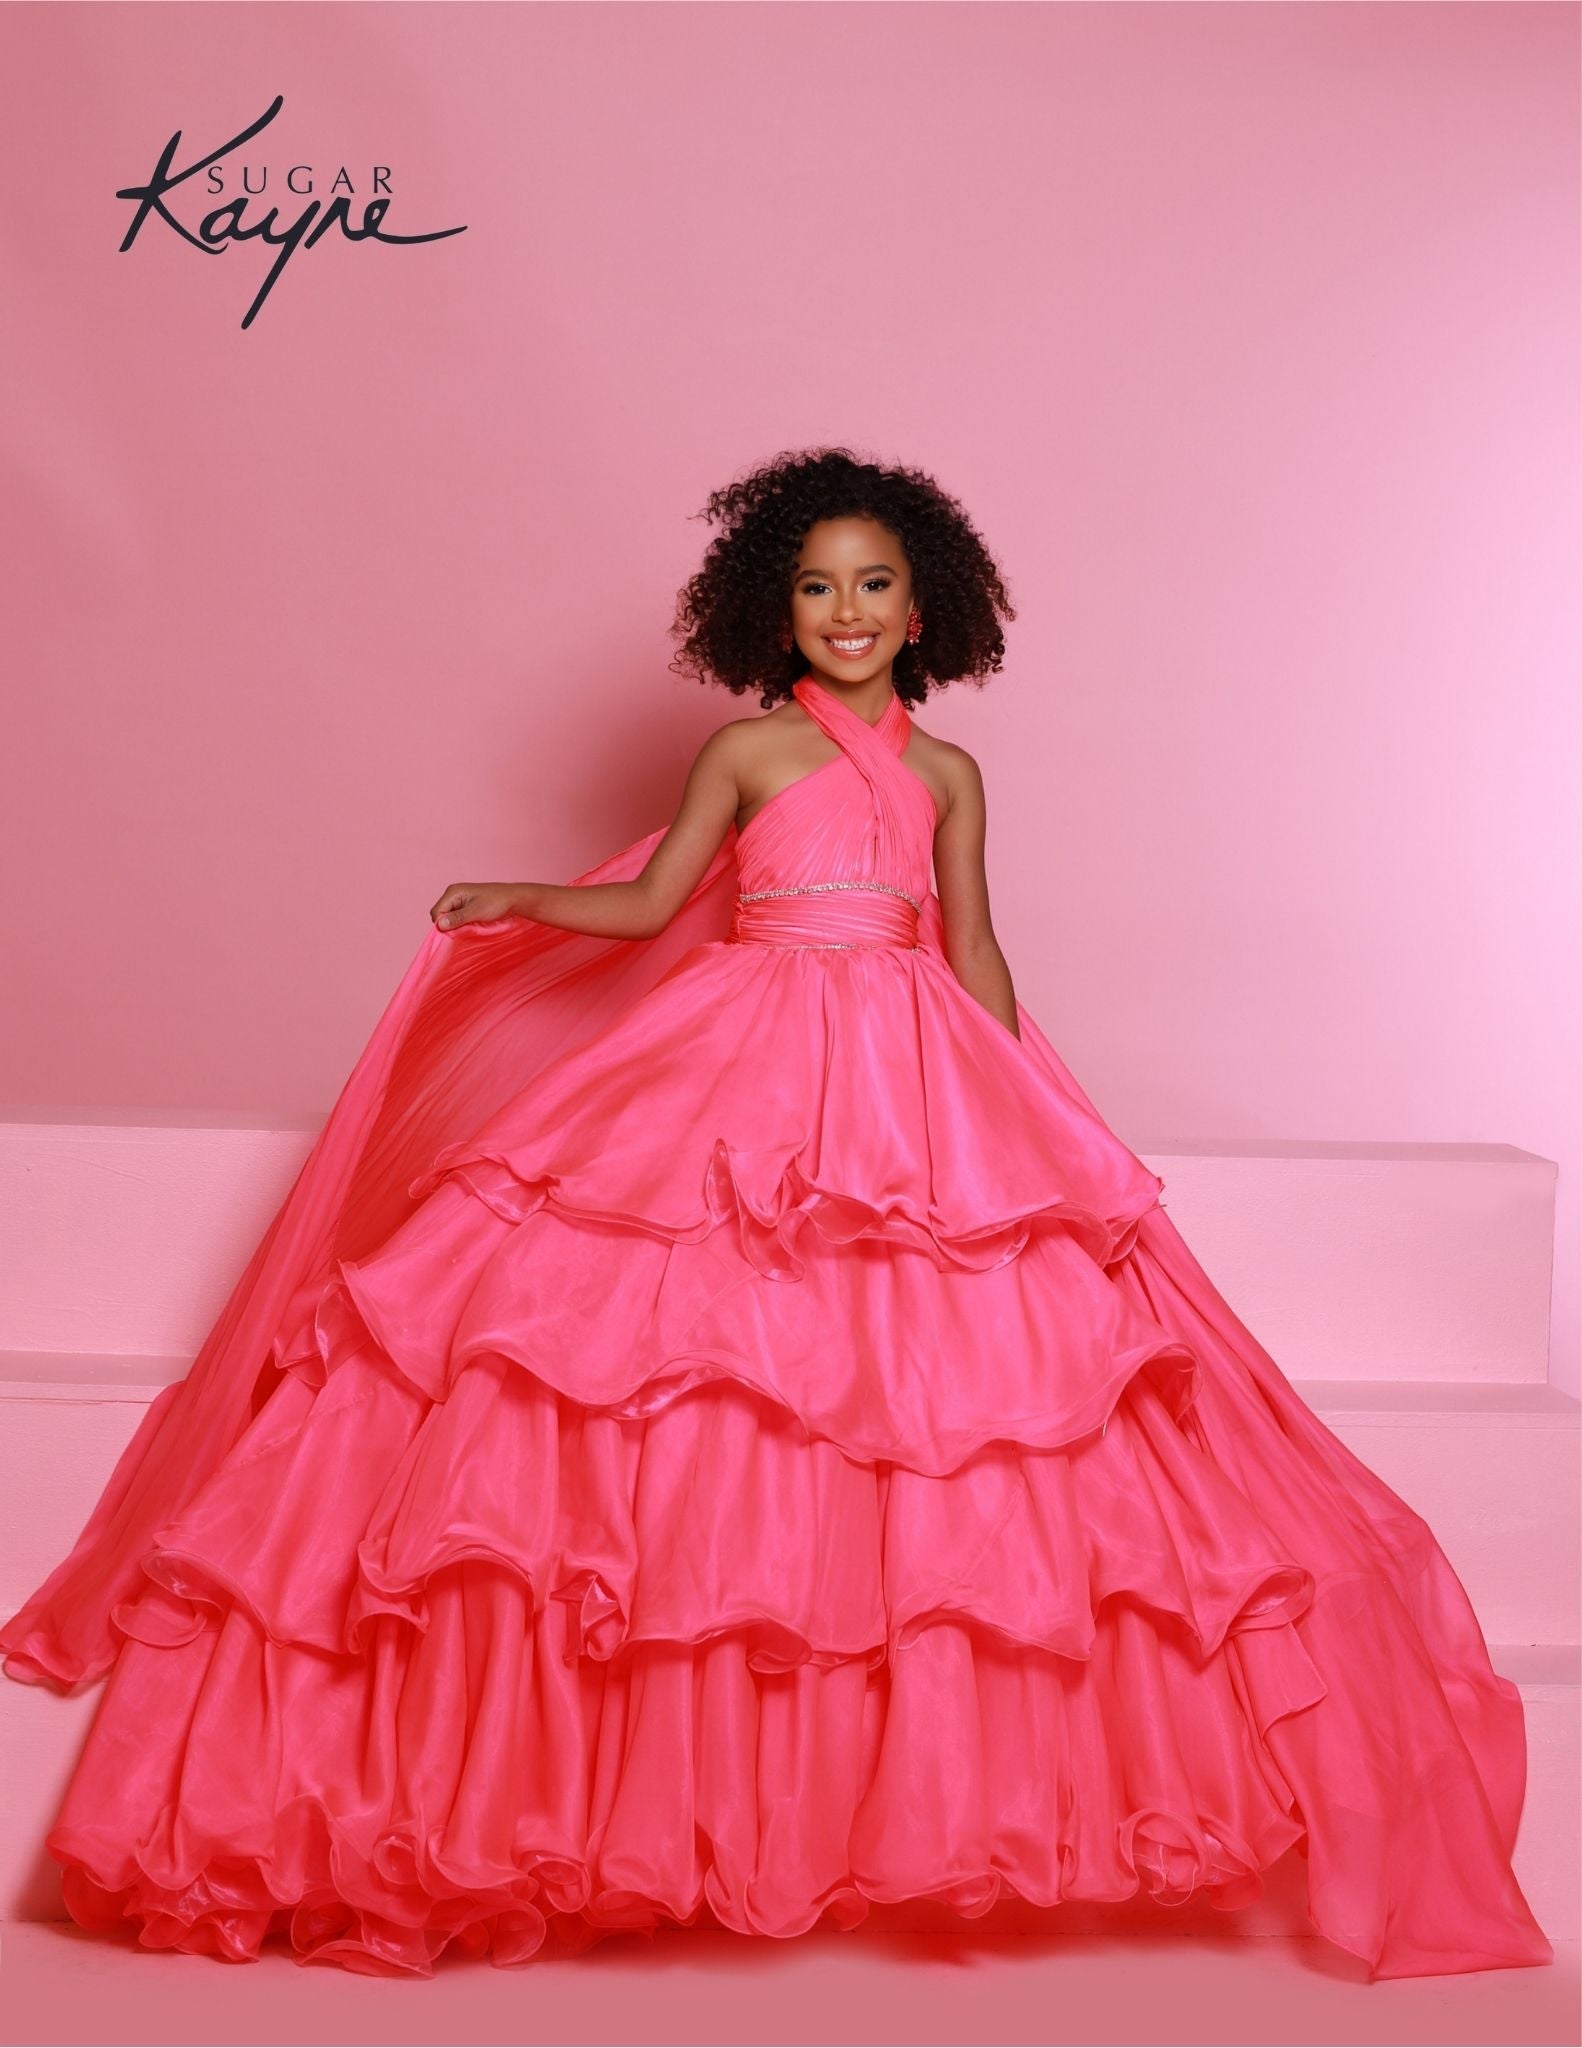 Sugar Kayne C305 Size 8, 12 Barbie Pink Ruffled Layers Girls